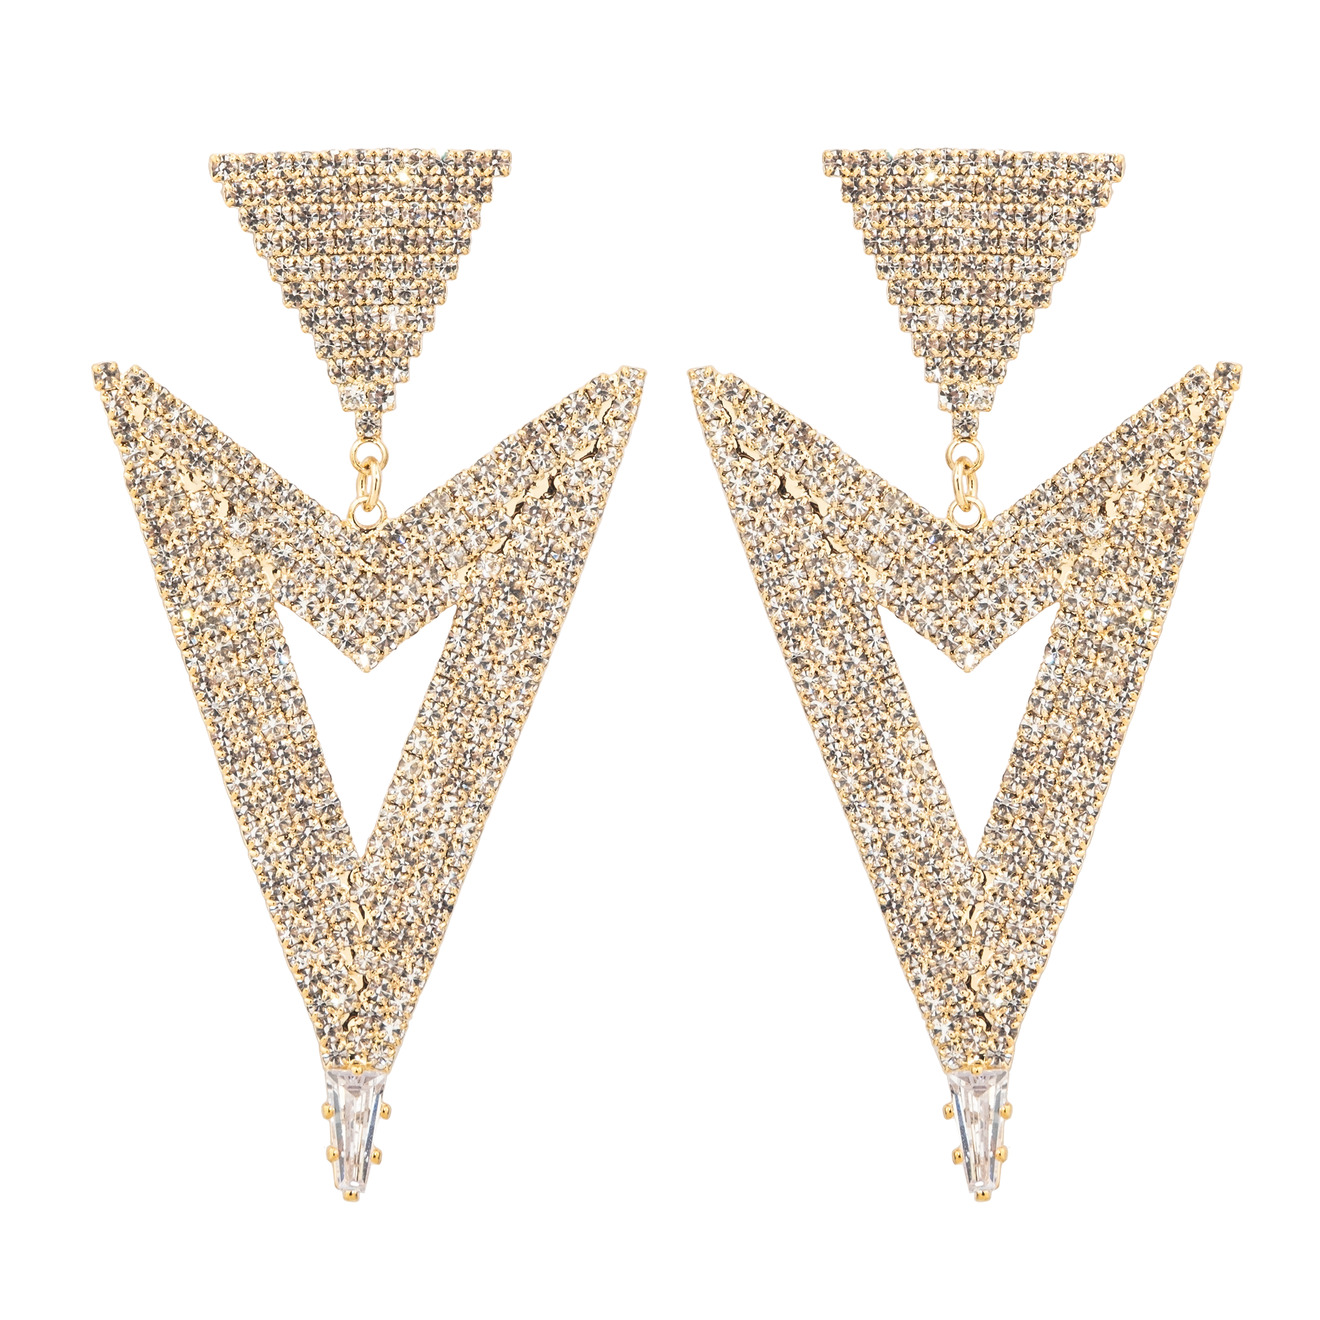 Herald Percy Золотистые серьги-стрелки с кристаллами herald percy двойные золотистые серьги с белыми кристаллами